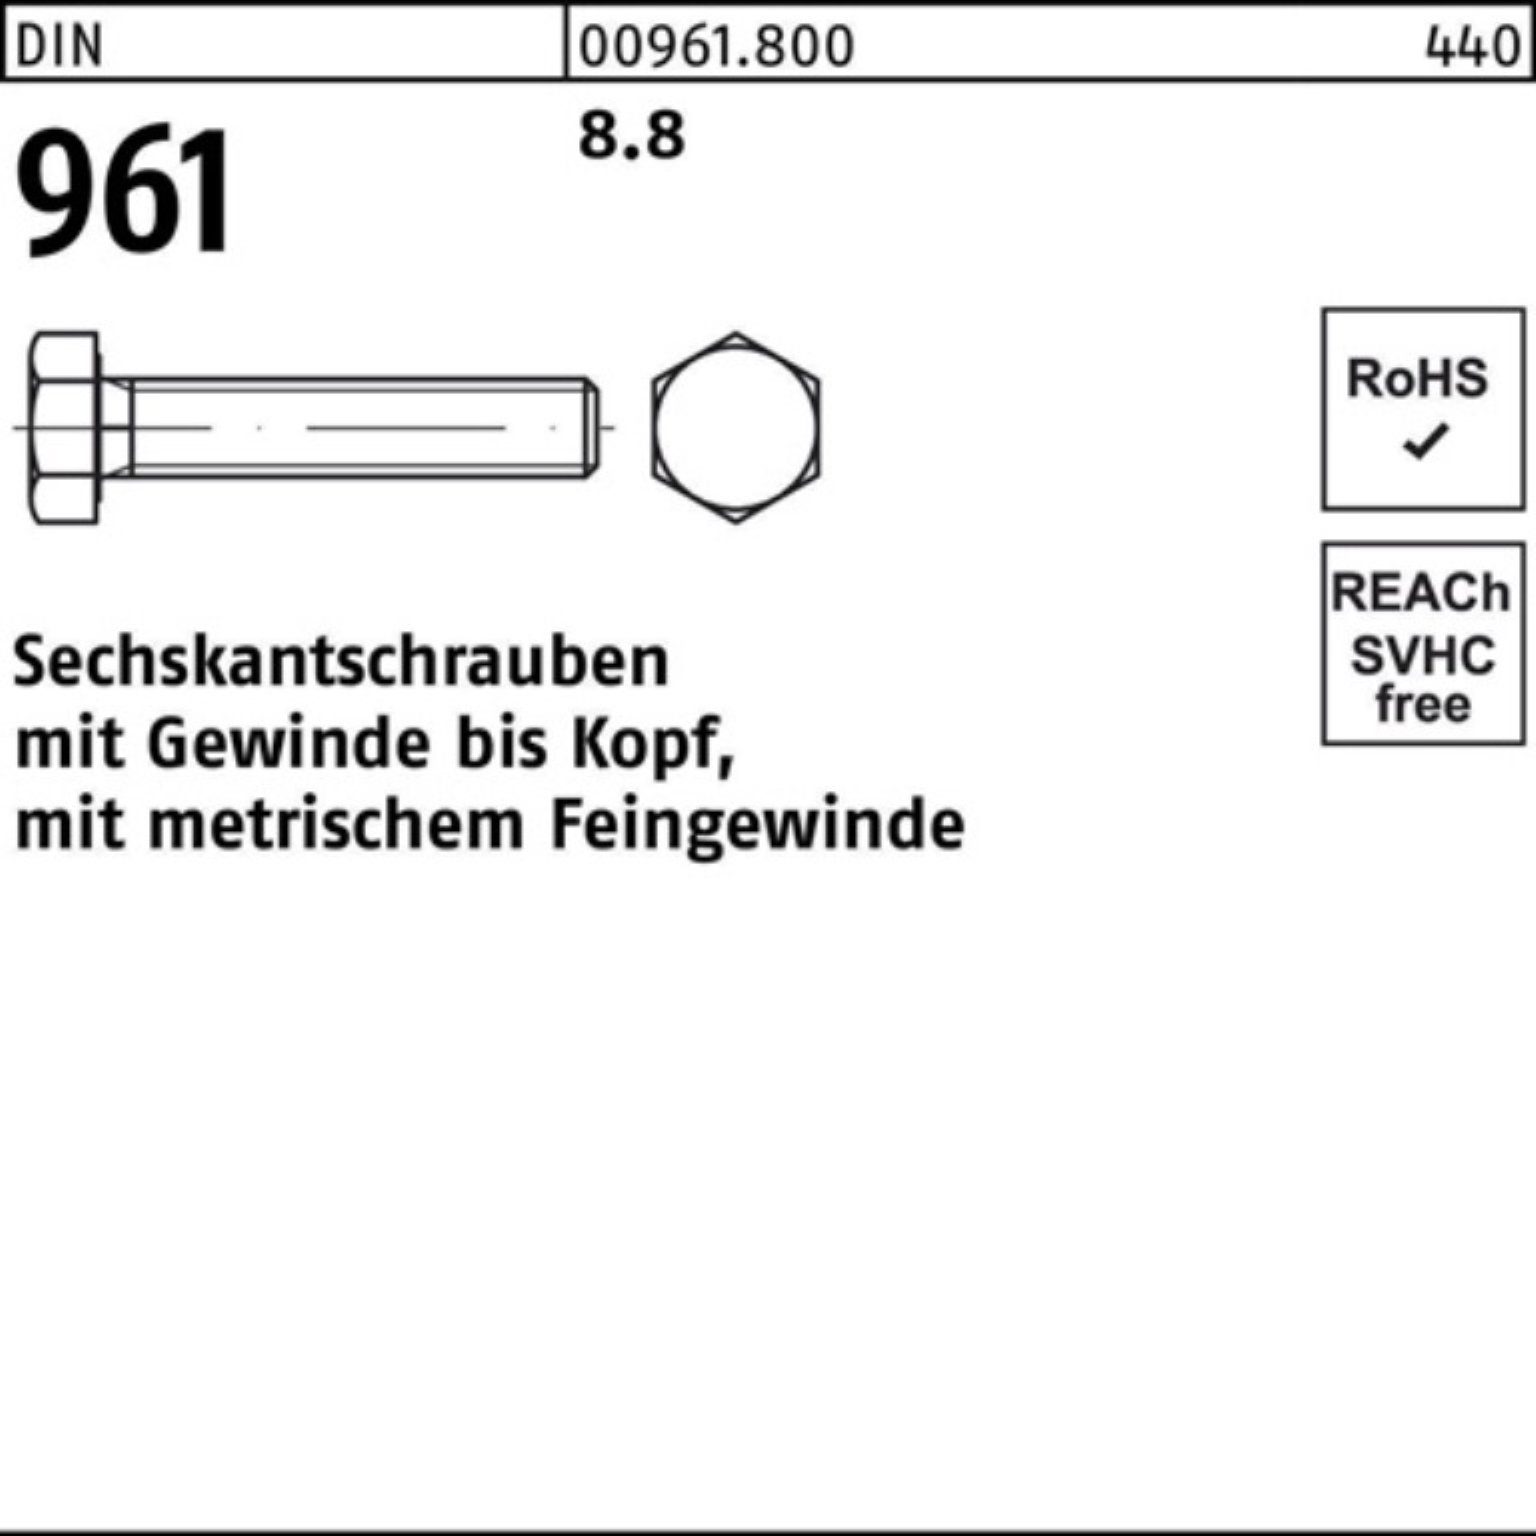 Pack DIN Sechskantschraube M16x1,5x 961 8.8 Sechskantschraube 80 Stück VG DIN 100er Reyher 25